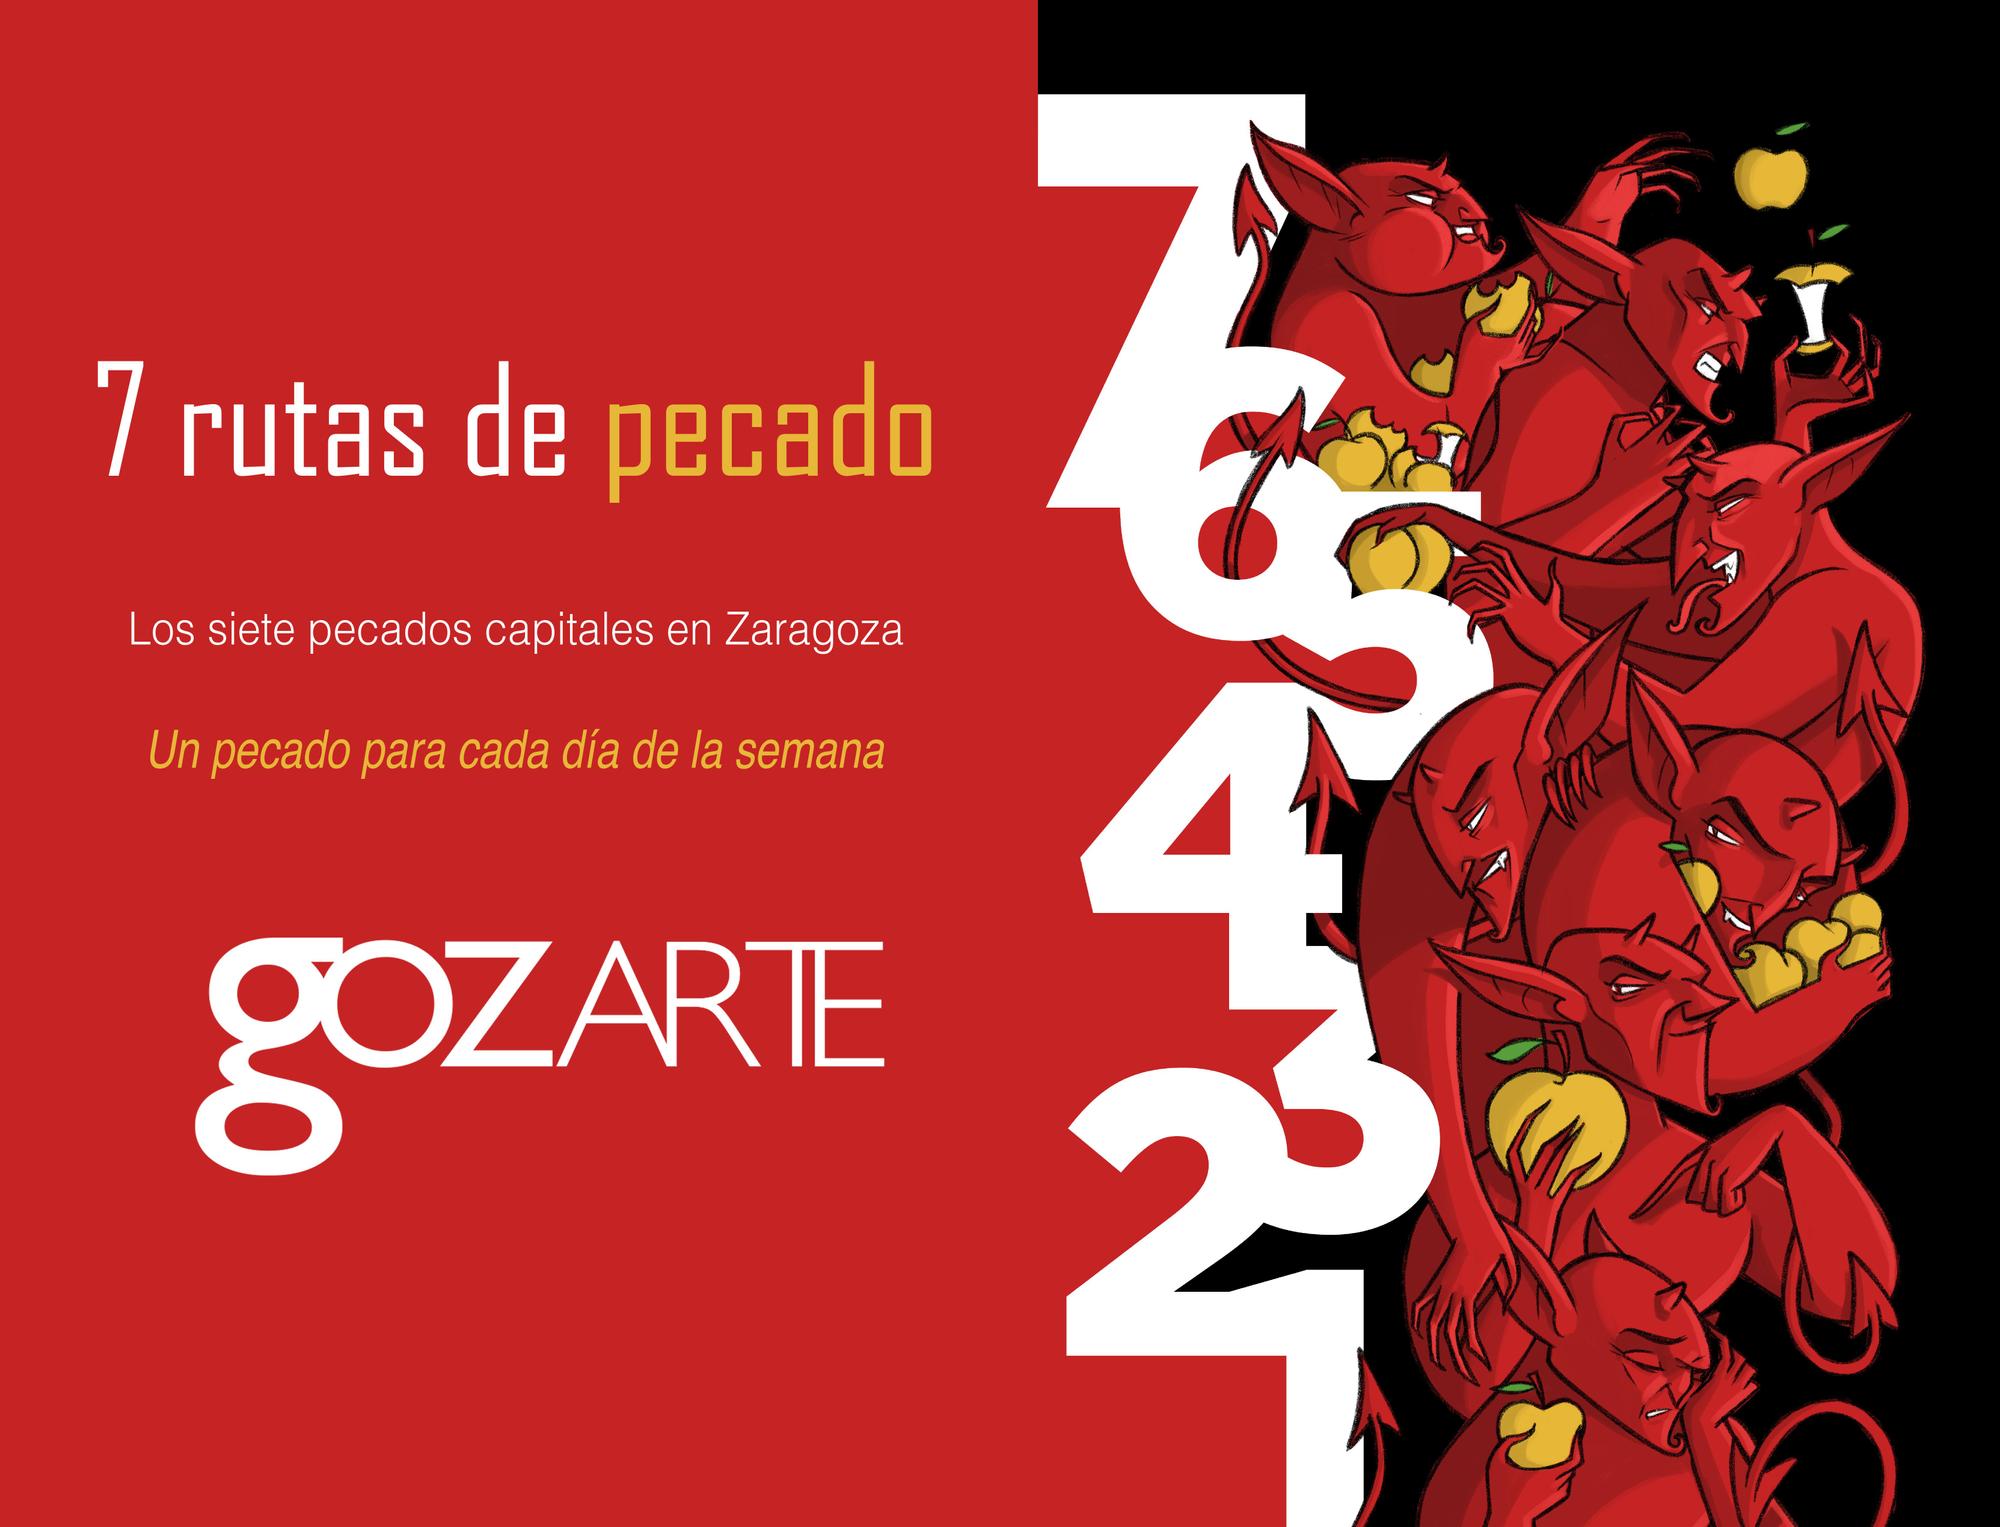 La ruta de los 7 pecados capitales en Zaragoza cumple 15 años.